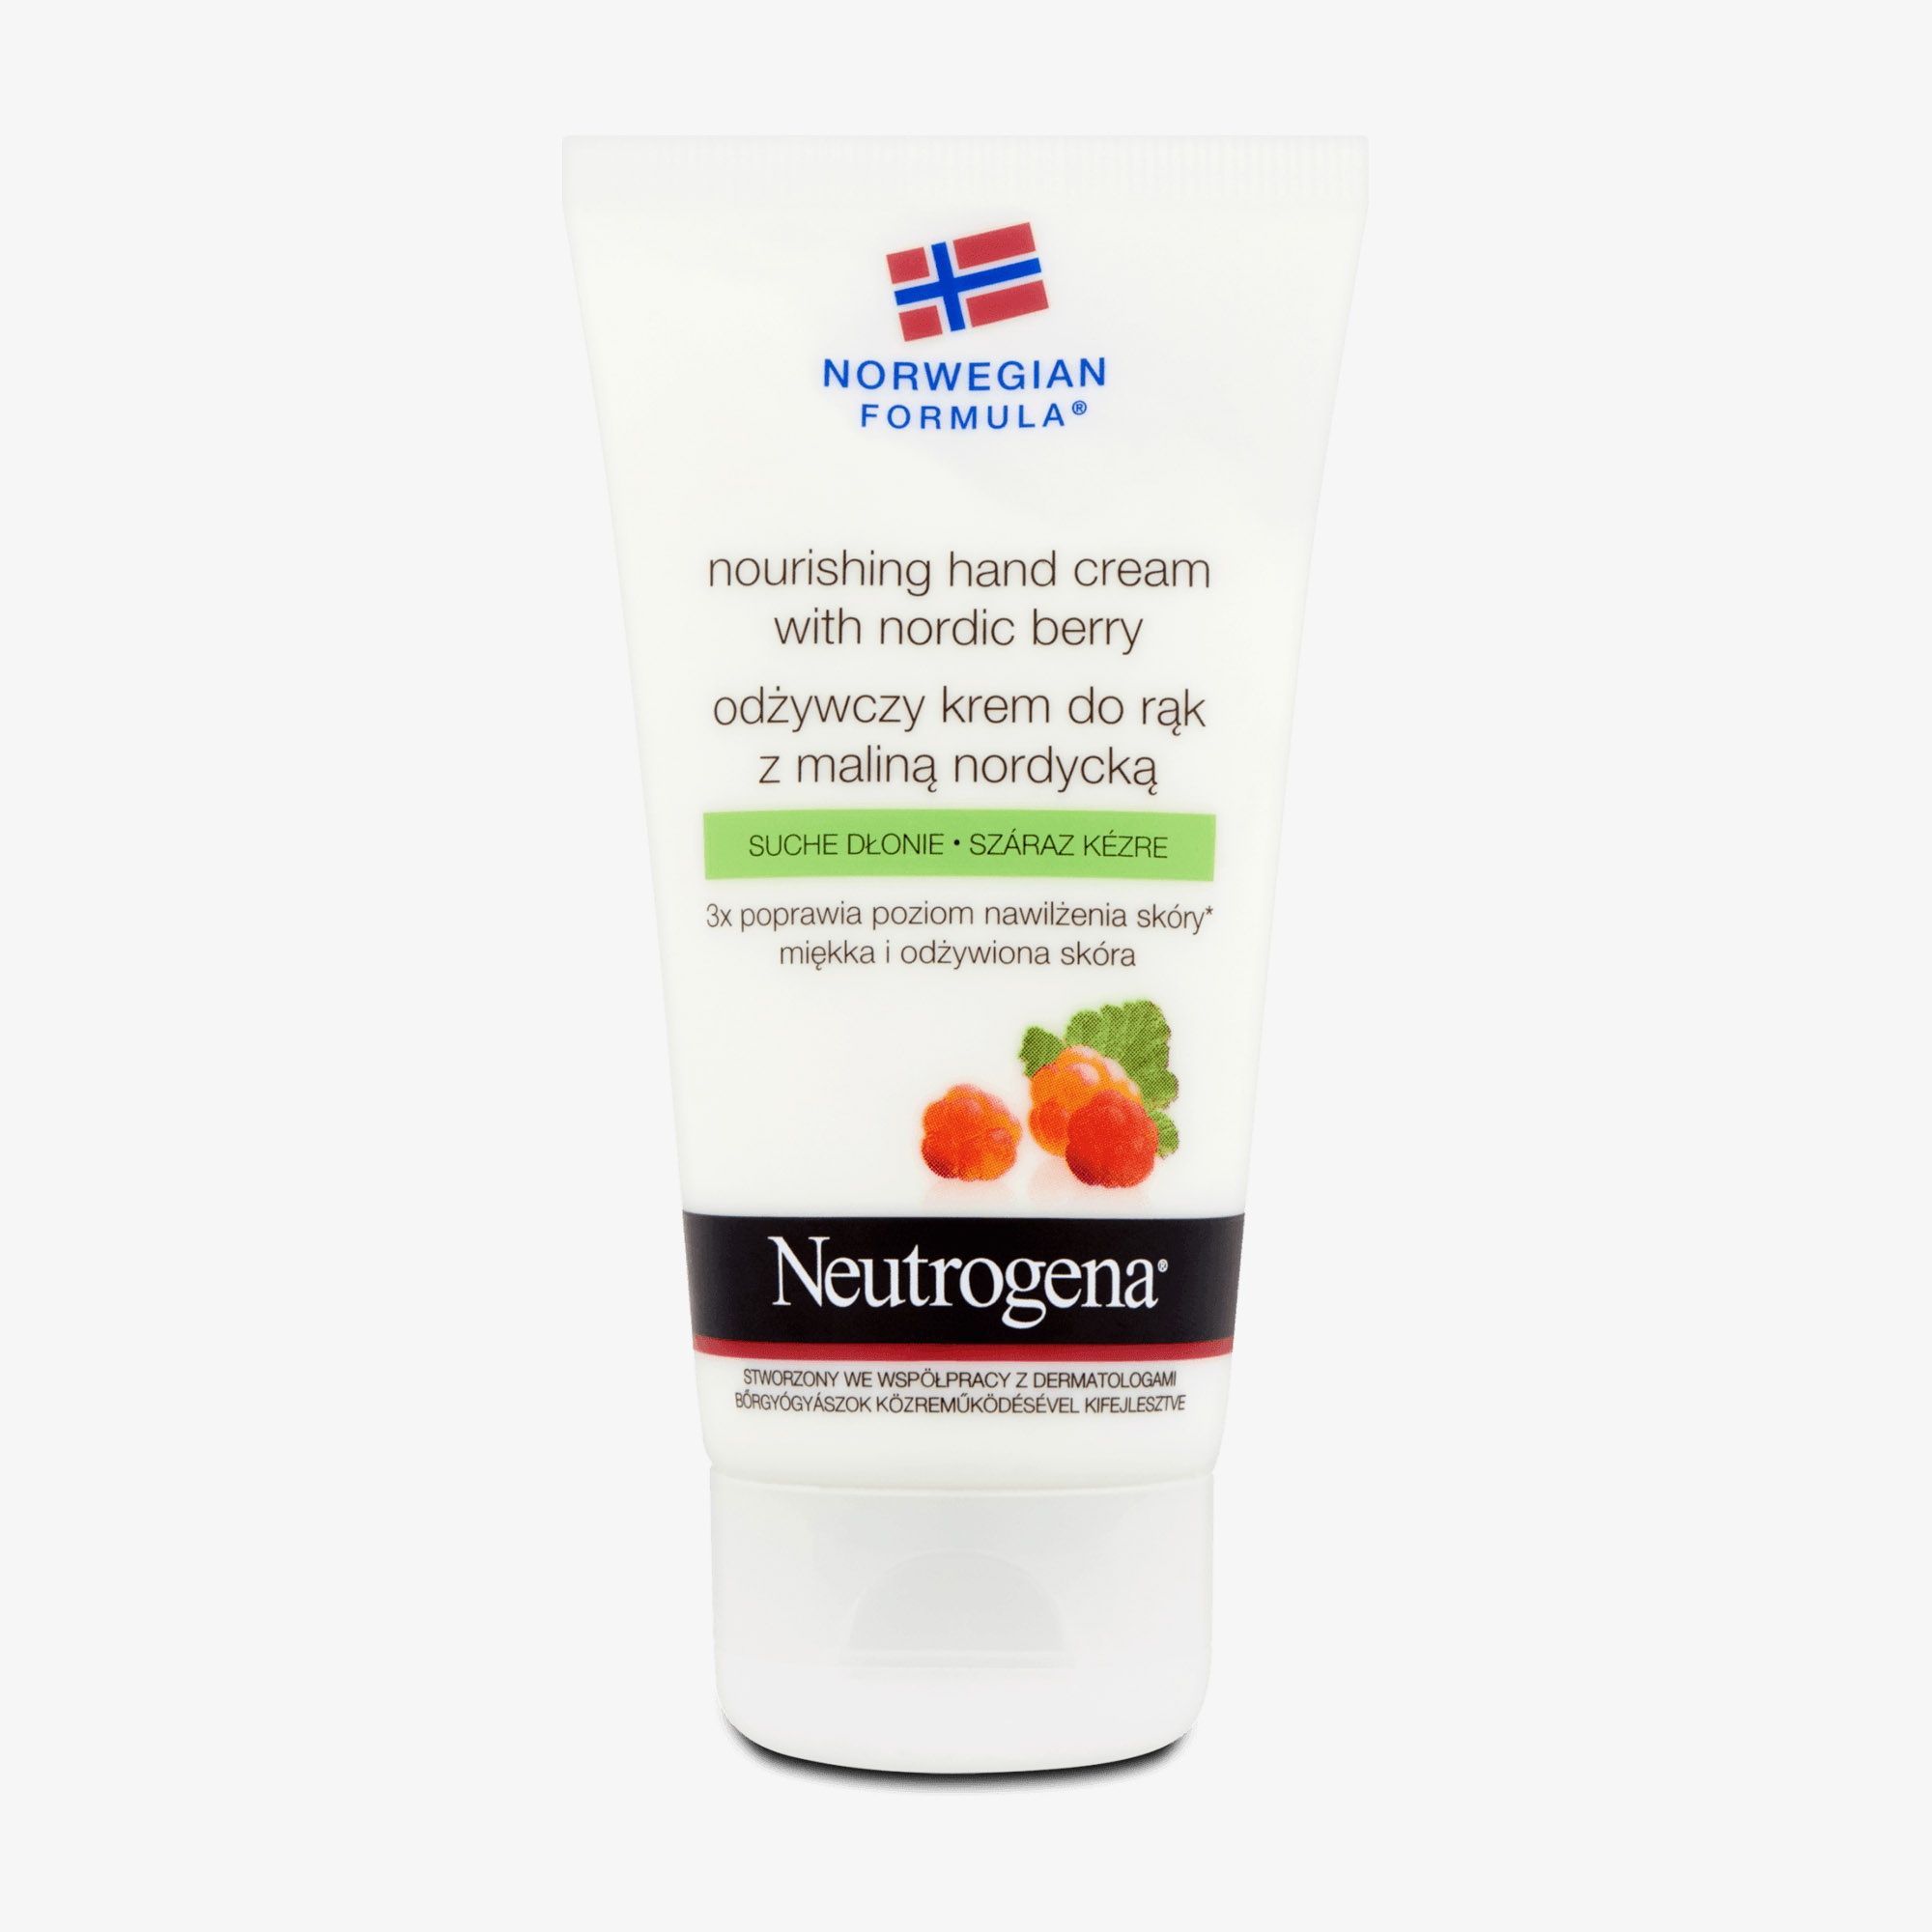 Neutrogena Norwegian Formula Nourishing Hand Cream With Nordic Berry